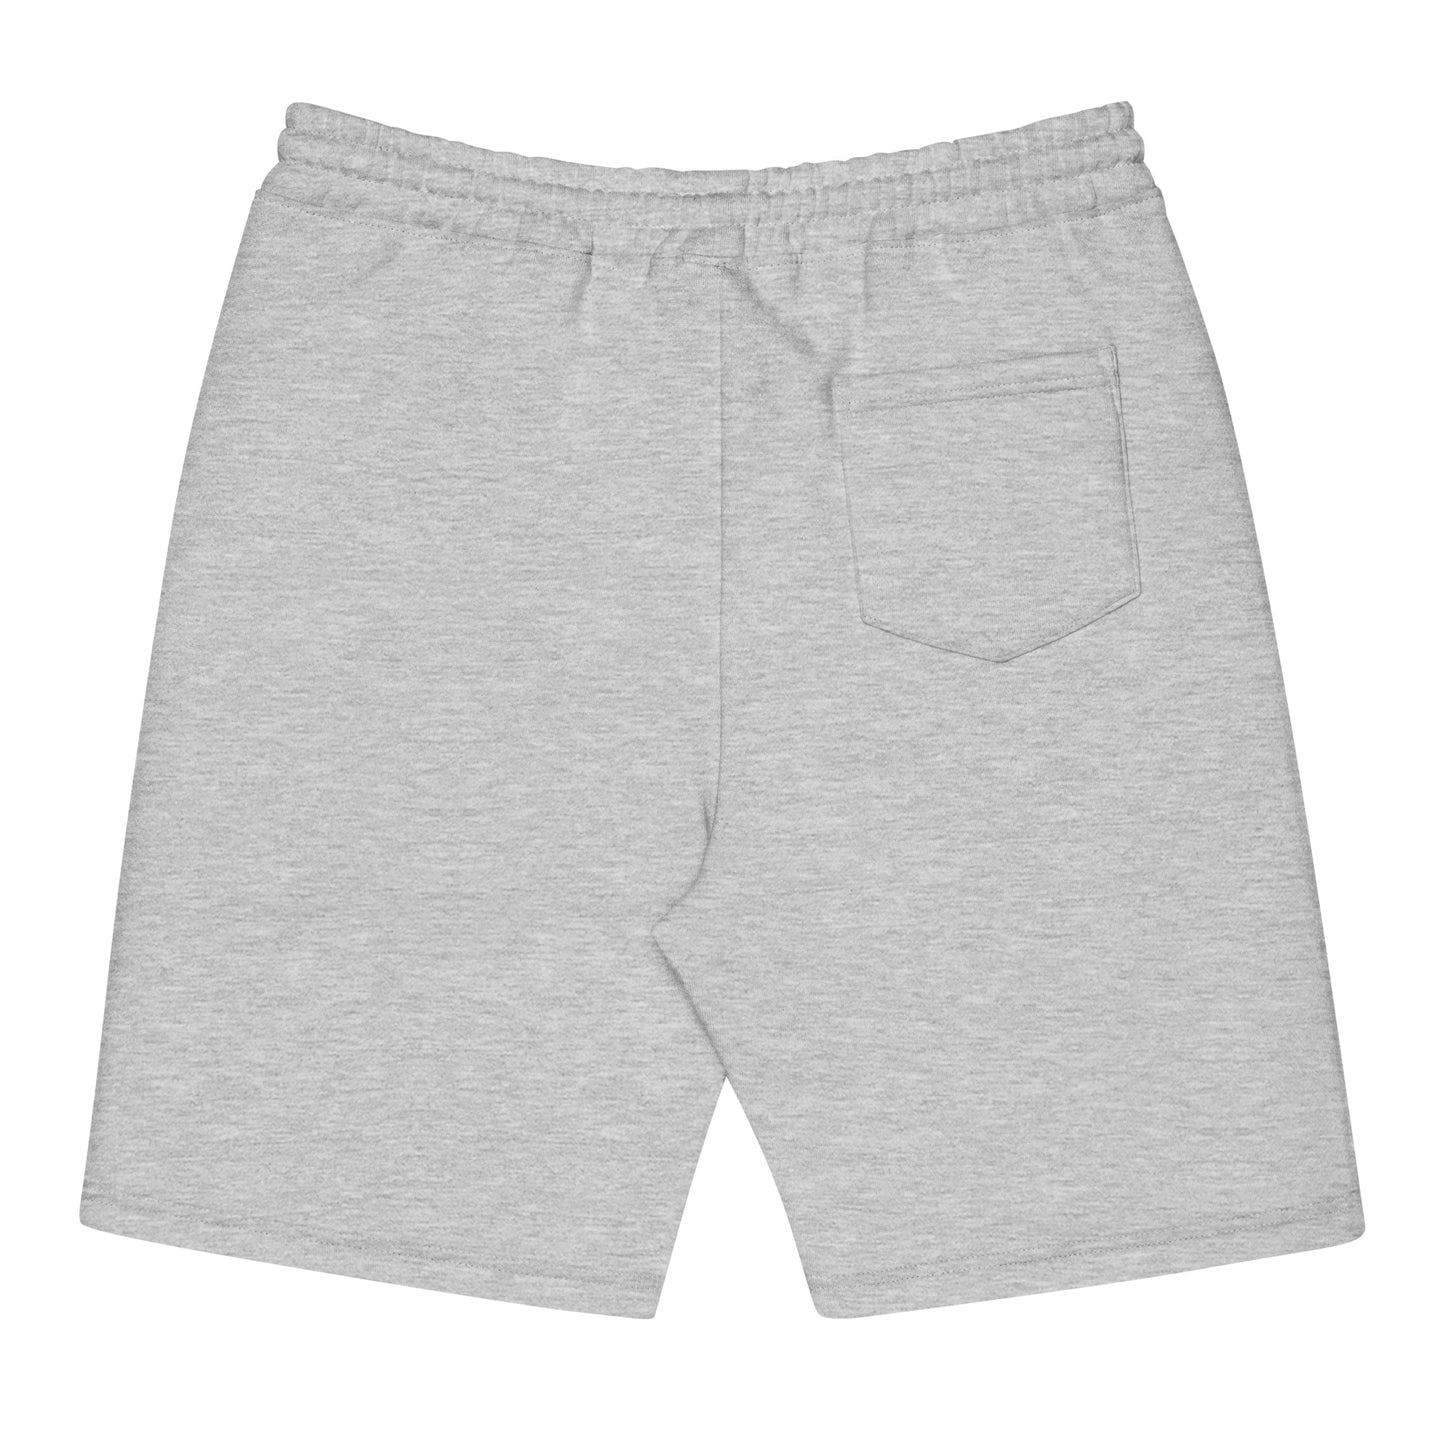 Goonies Logo Fleece Shorts - Elephant Print